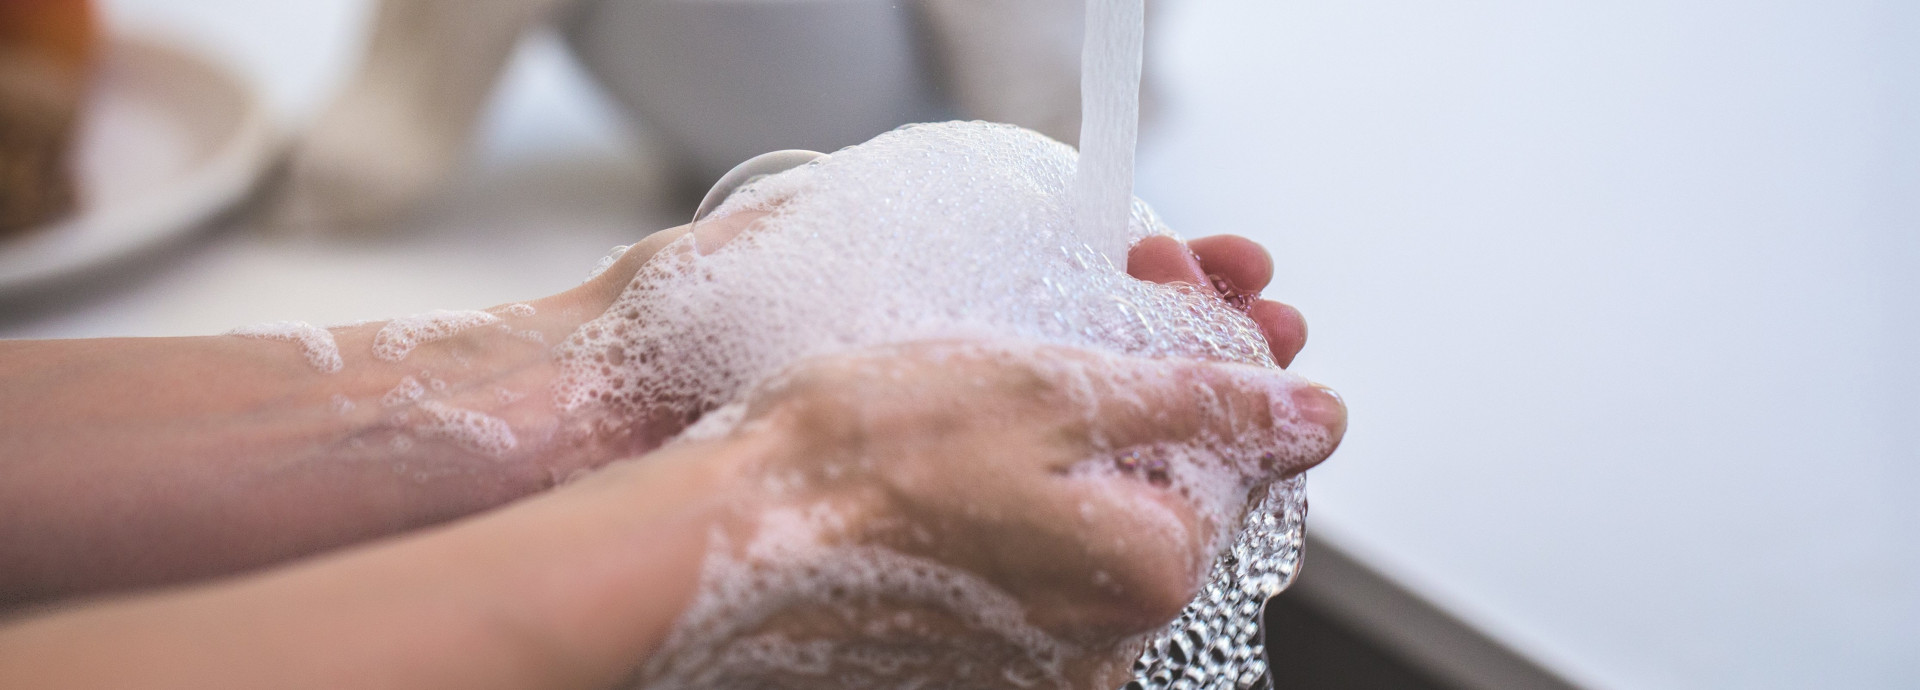 Trouver le bon savon our se laver les mains